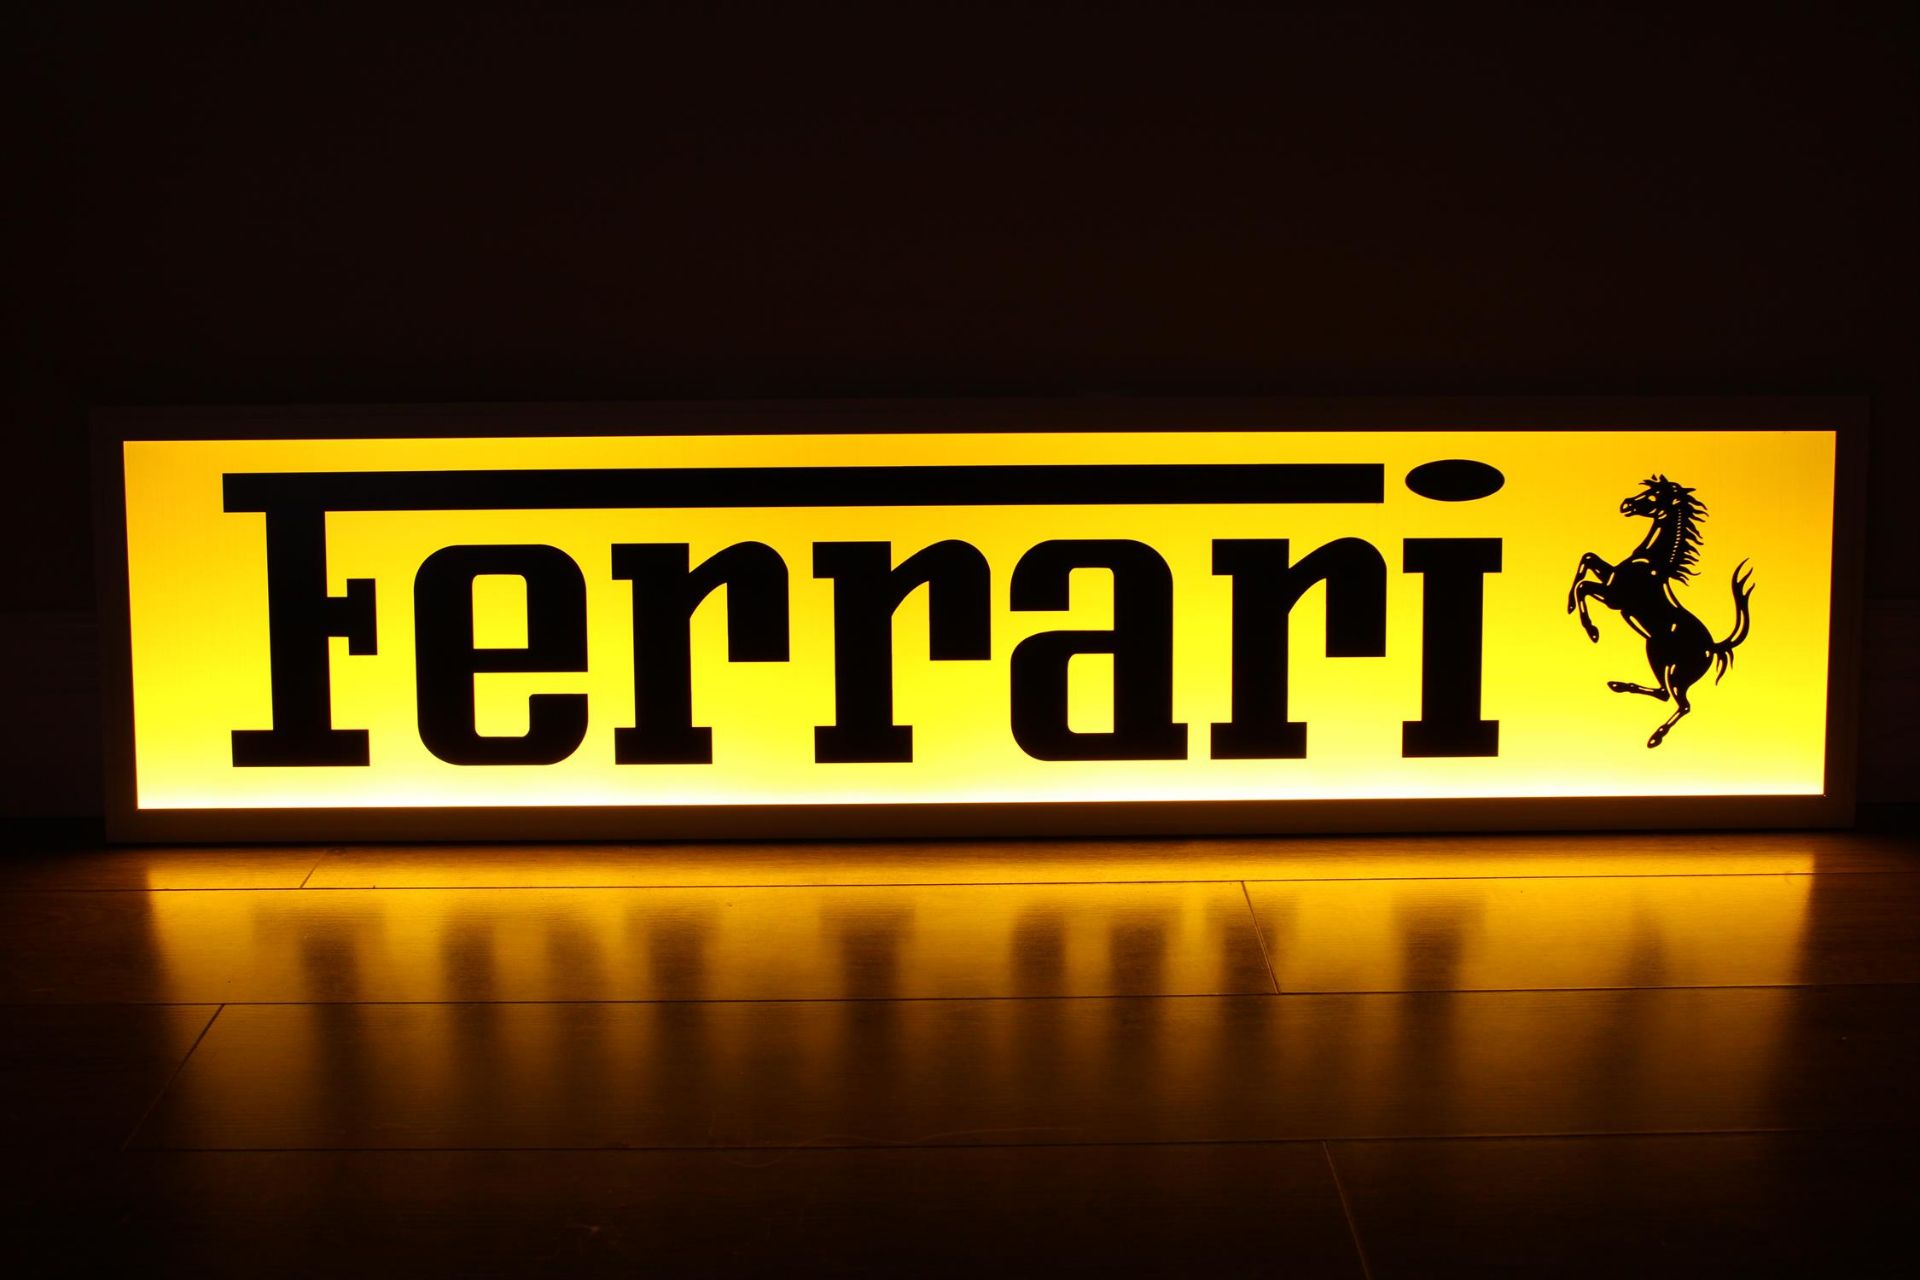 Ferrari Style Illuminated Sign - Image 2 of 10